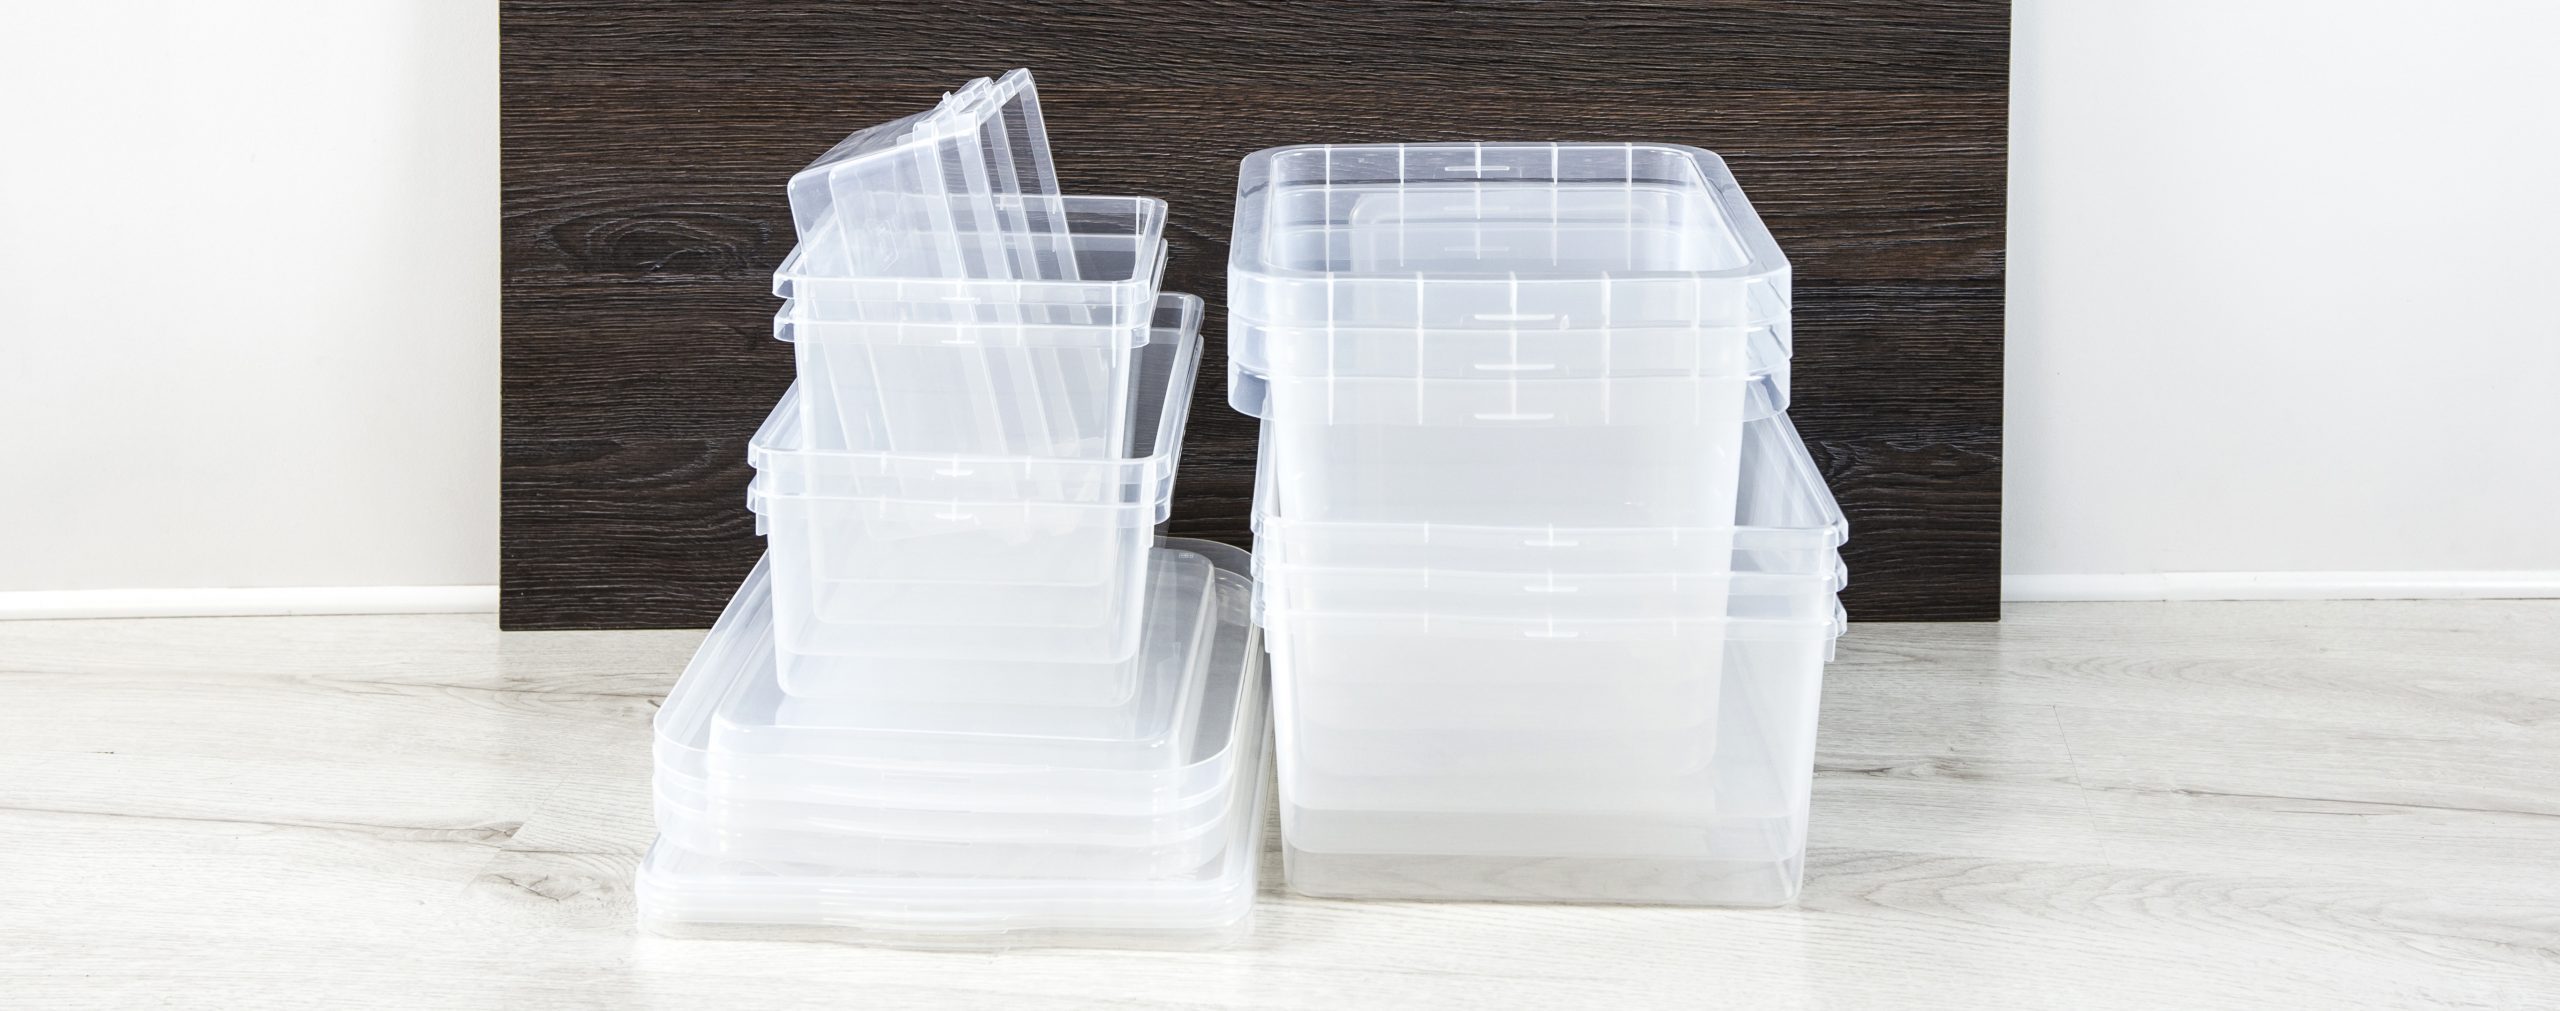 ClearSpace 12.5 x 9.5 x 7 Clear Plastic Storage Bins